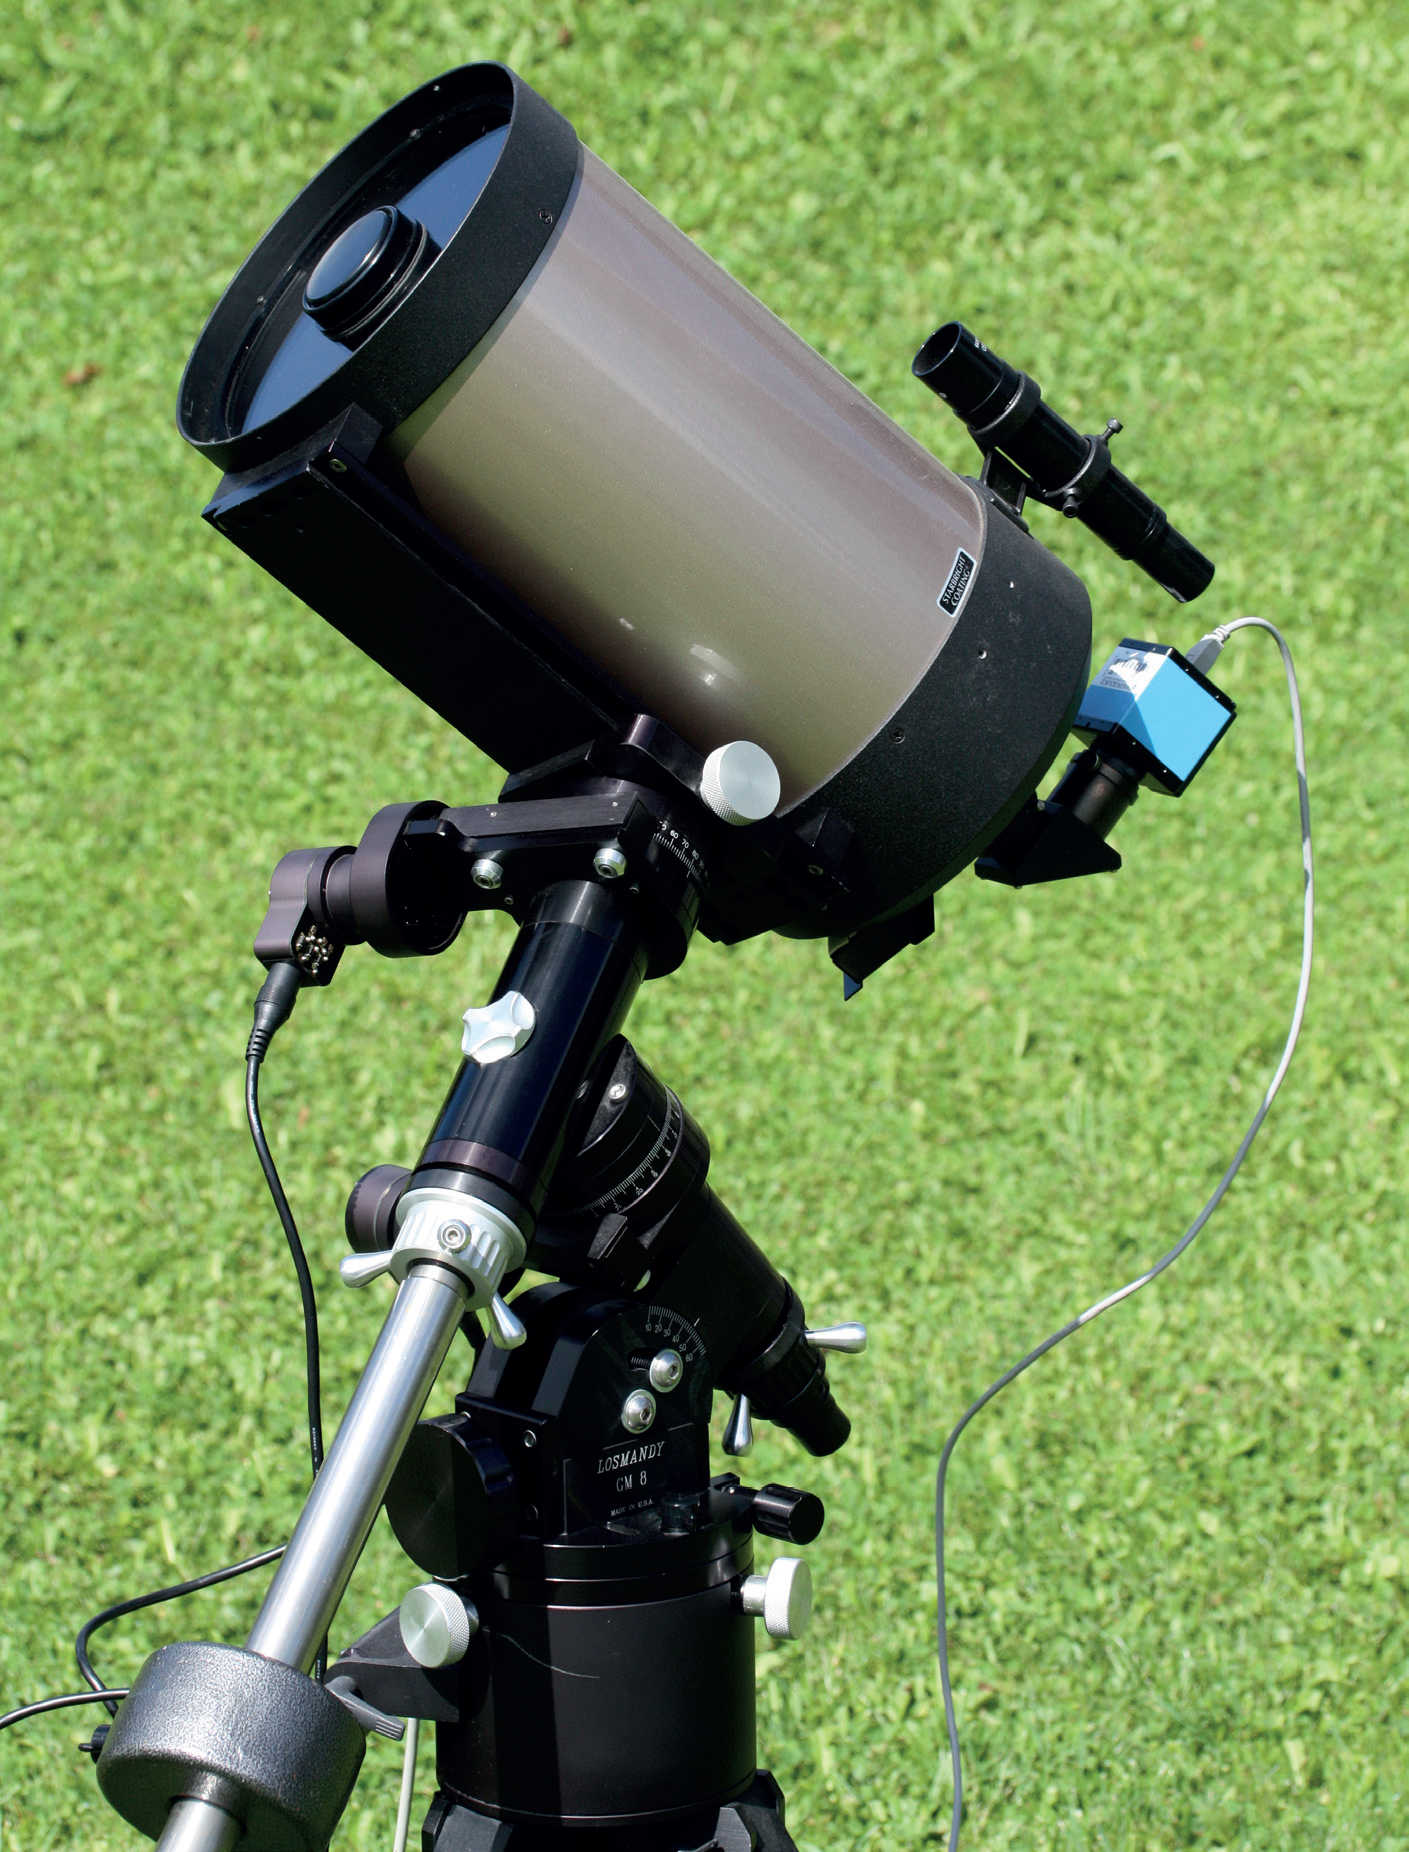 Kompakte, langbrennweitige Teleskope wie das hier abgebildete Schmidt-Cassegrain-
Teleskop eignen sich hervorragend für die Planetenfotografie. Die motorgetriebene deutsche
Montierung ermöglicht eine exakte Nachführung der optischen Einheit und so auch längere
Belichtungssequenzen mit der angeschlossenen CCD-Kamera. U. Dittler